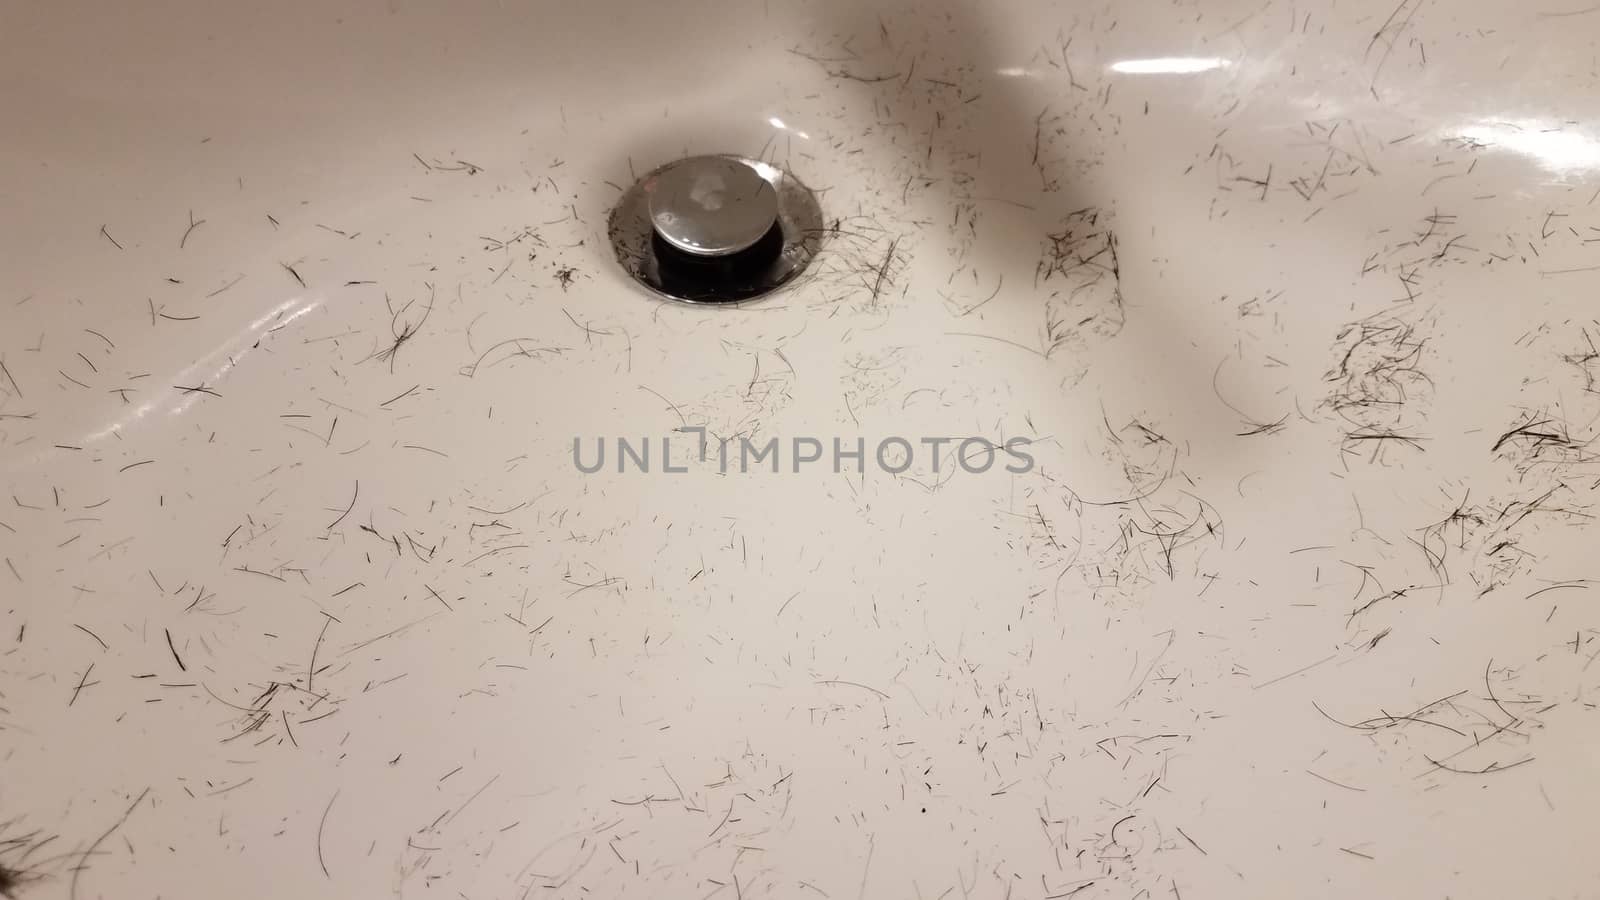 cut brown hair in white bathroom sink by stockphotofan1